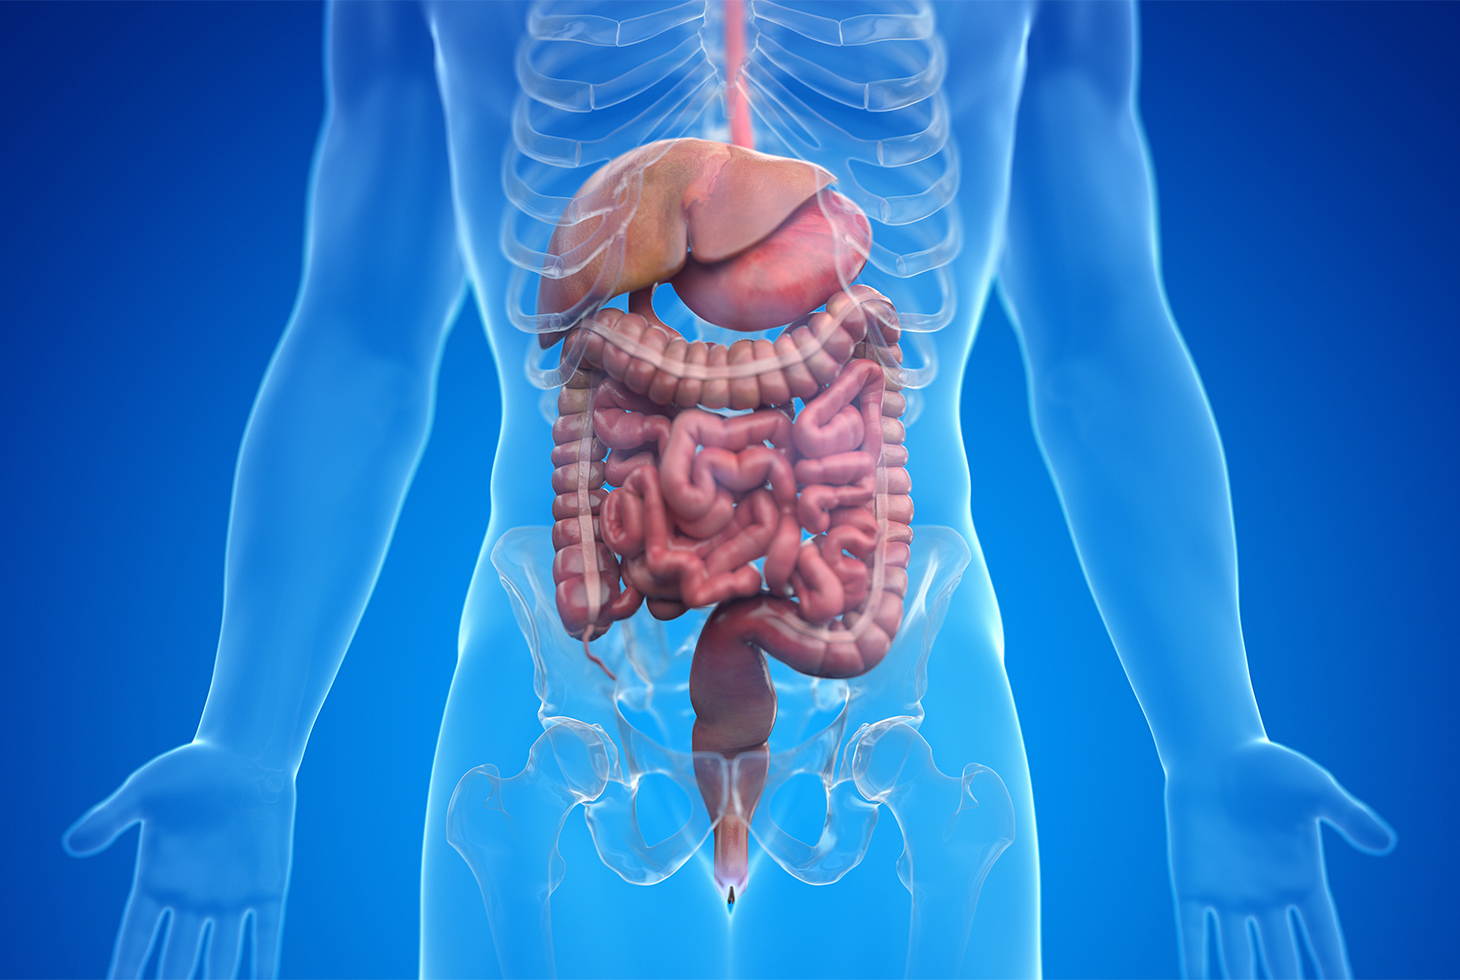 Fonctionnement de la vessie et du système urinaire (BE-FR)